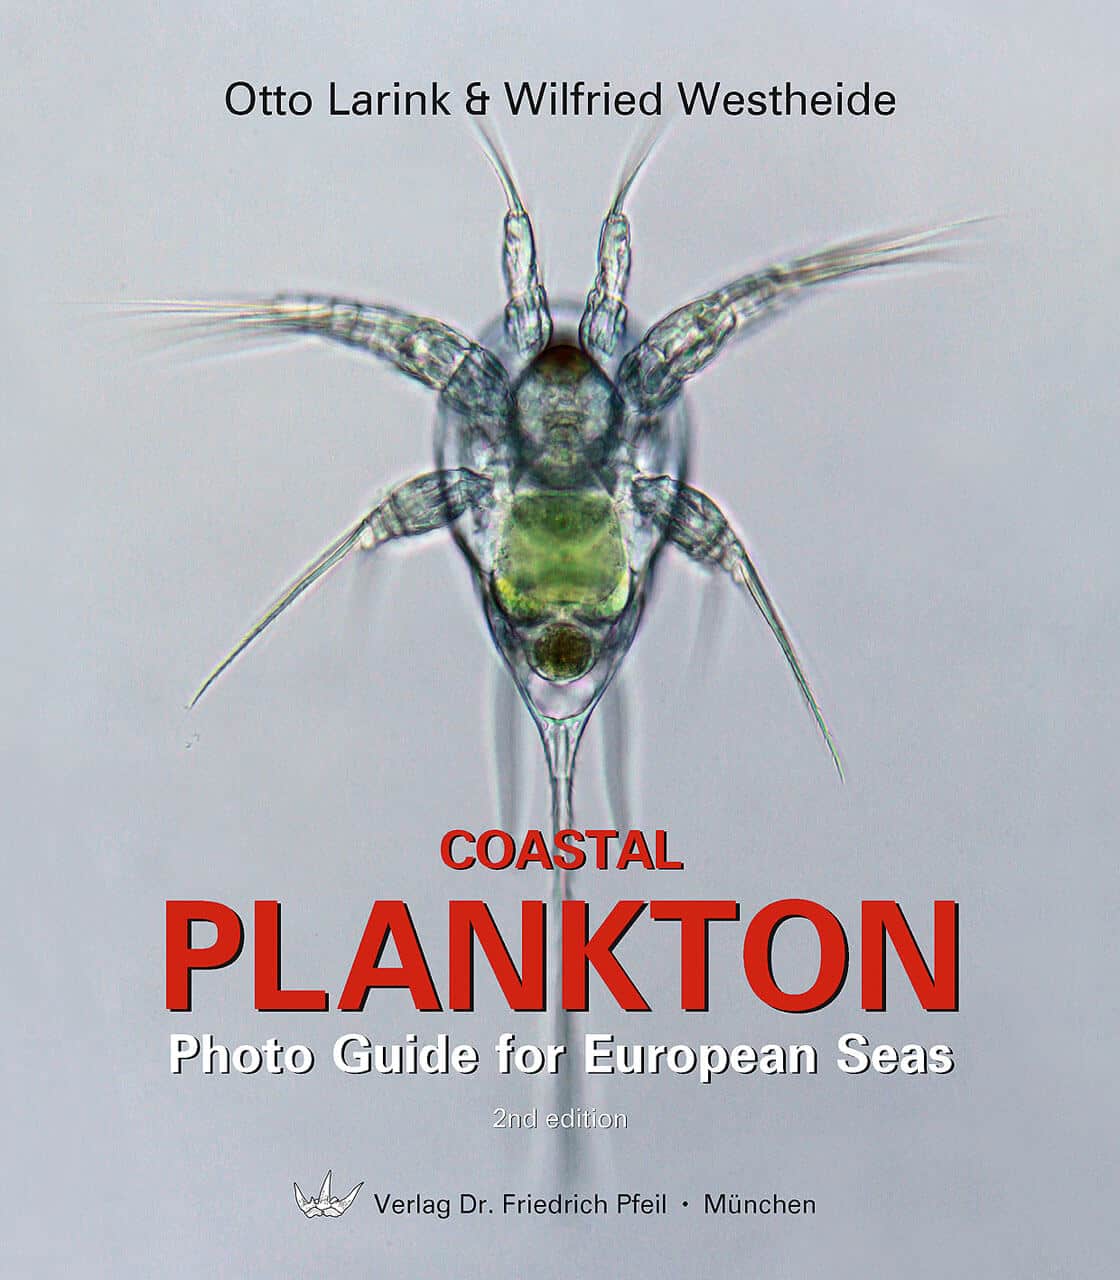 Coastal Plankton - Dr. Friedrich Pfeil Publishing